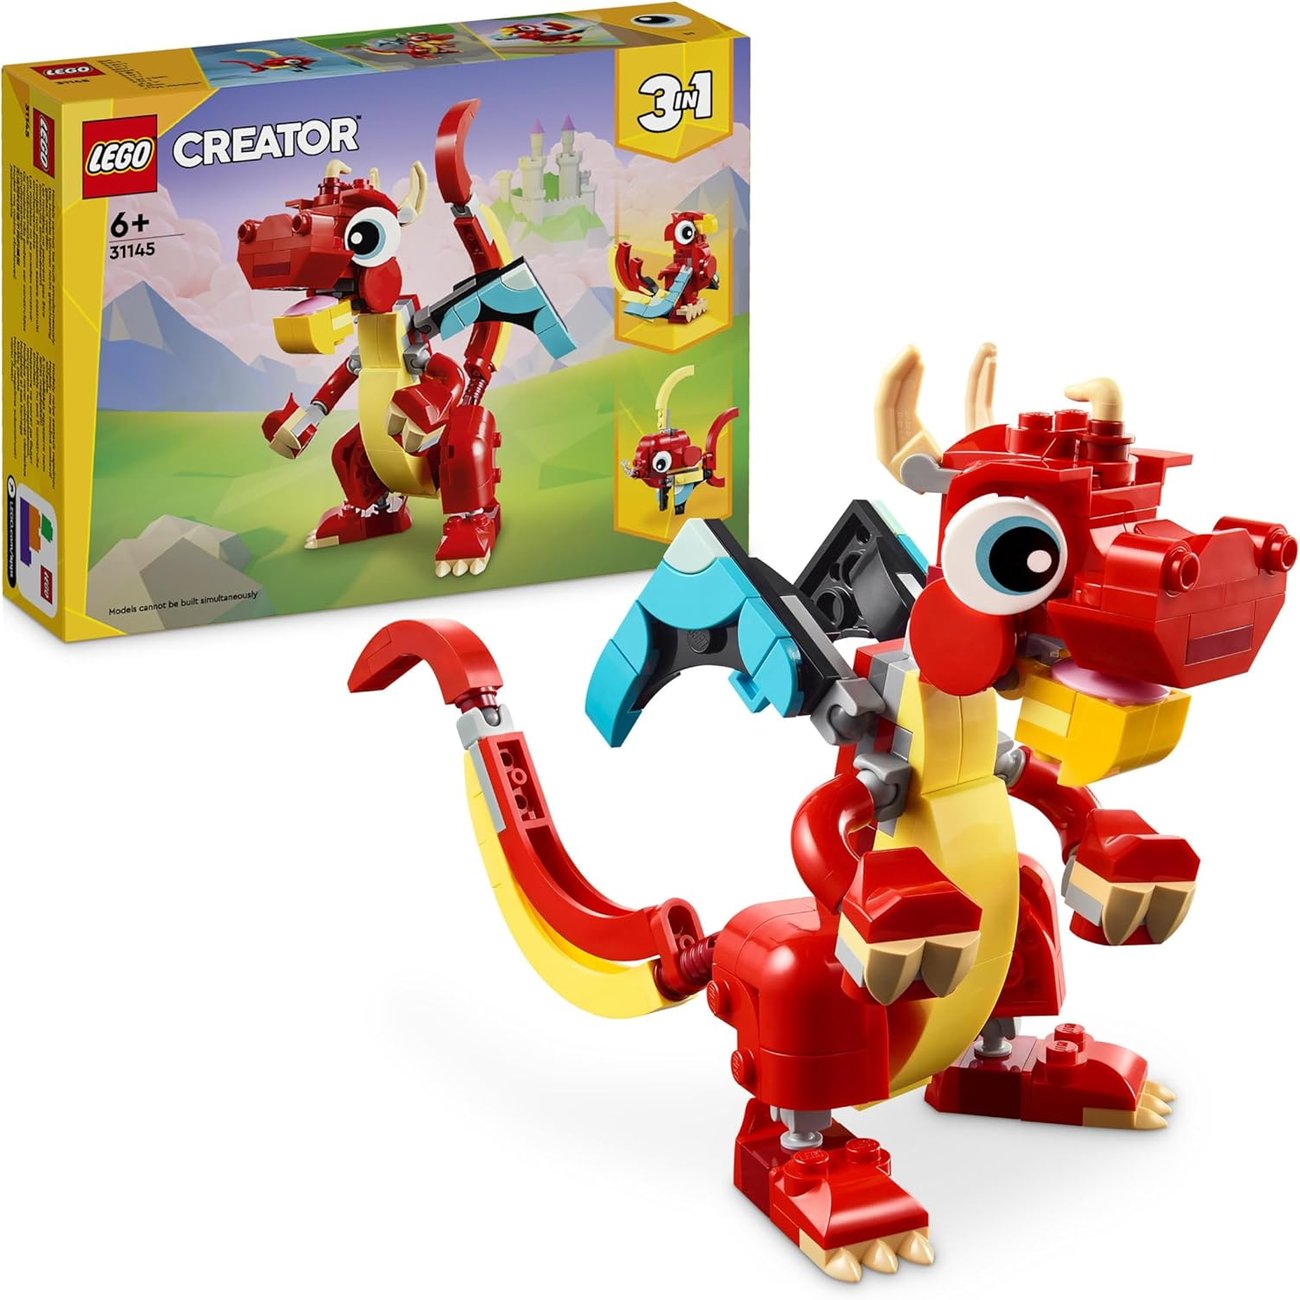 LEGO Creator 3in1 Spielzeug Roter Drache, Fisch und Phönix